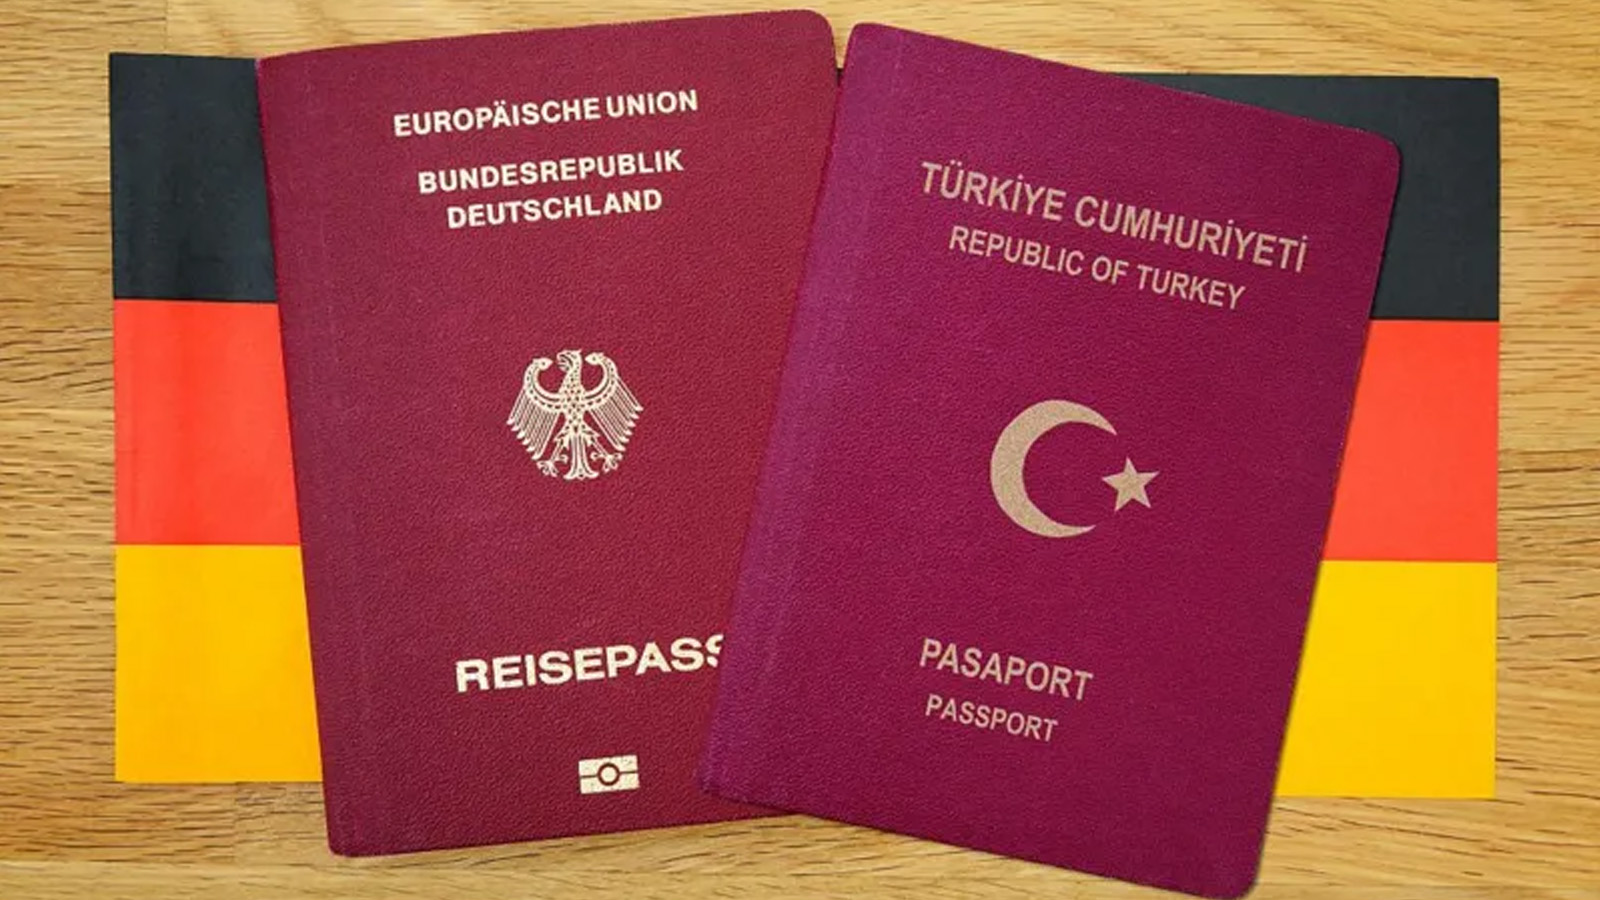 Almanya’da çifte vatandaşlığı mümkün kılacak yasa tasarısı Federal Meclis'te kabul edildi